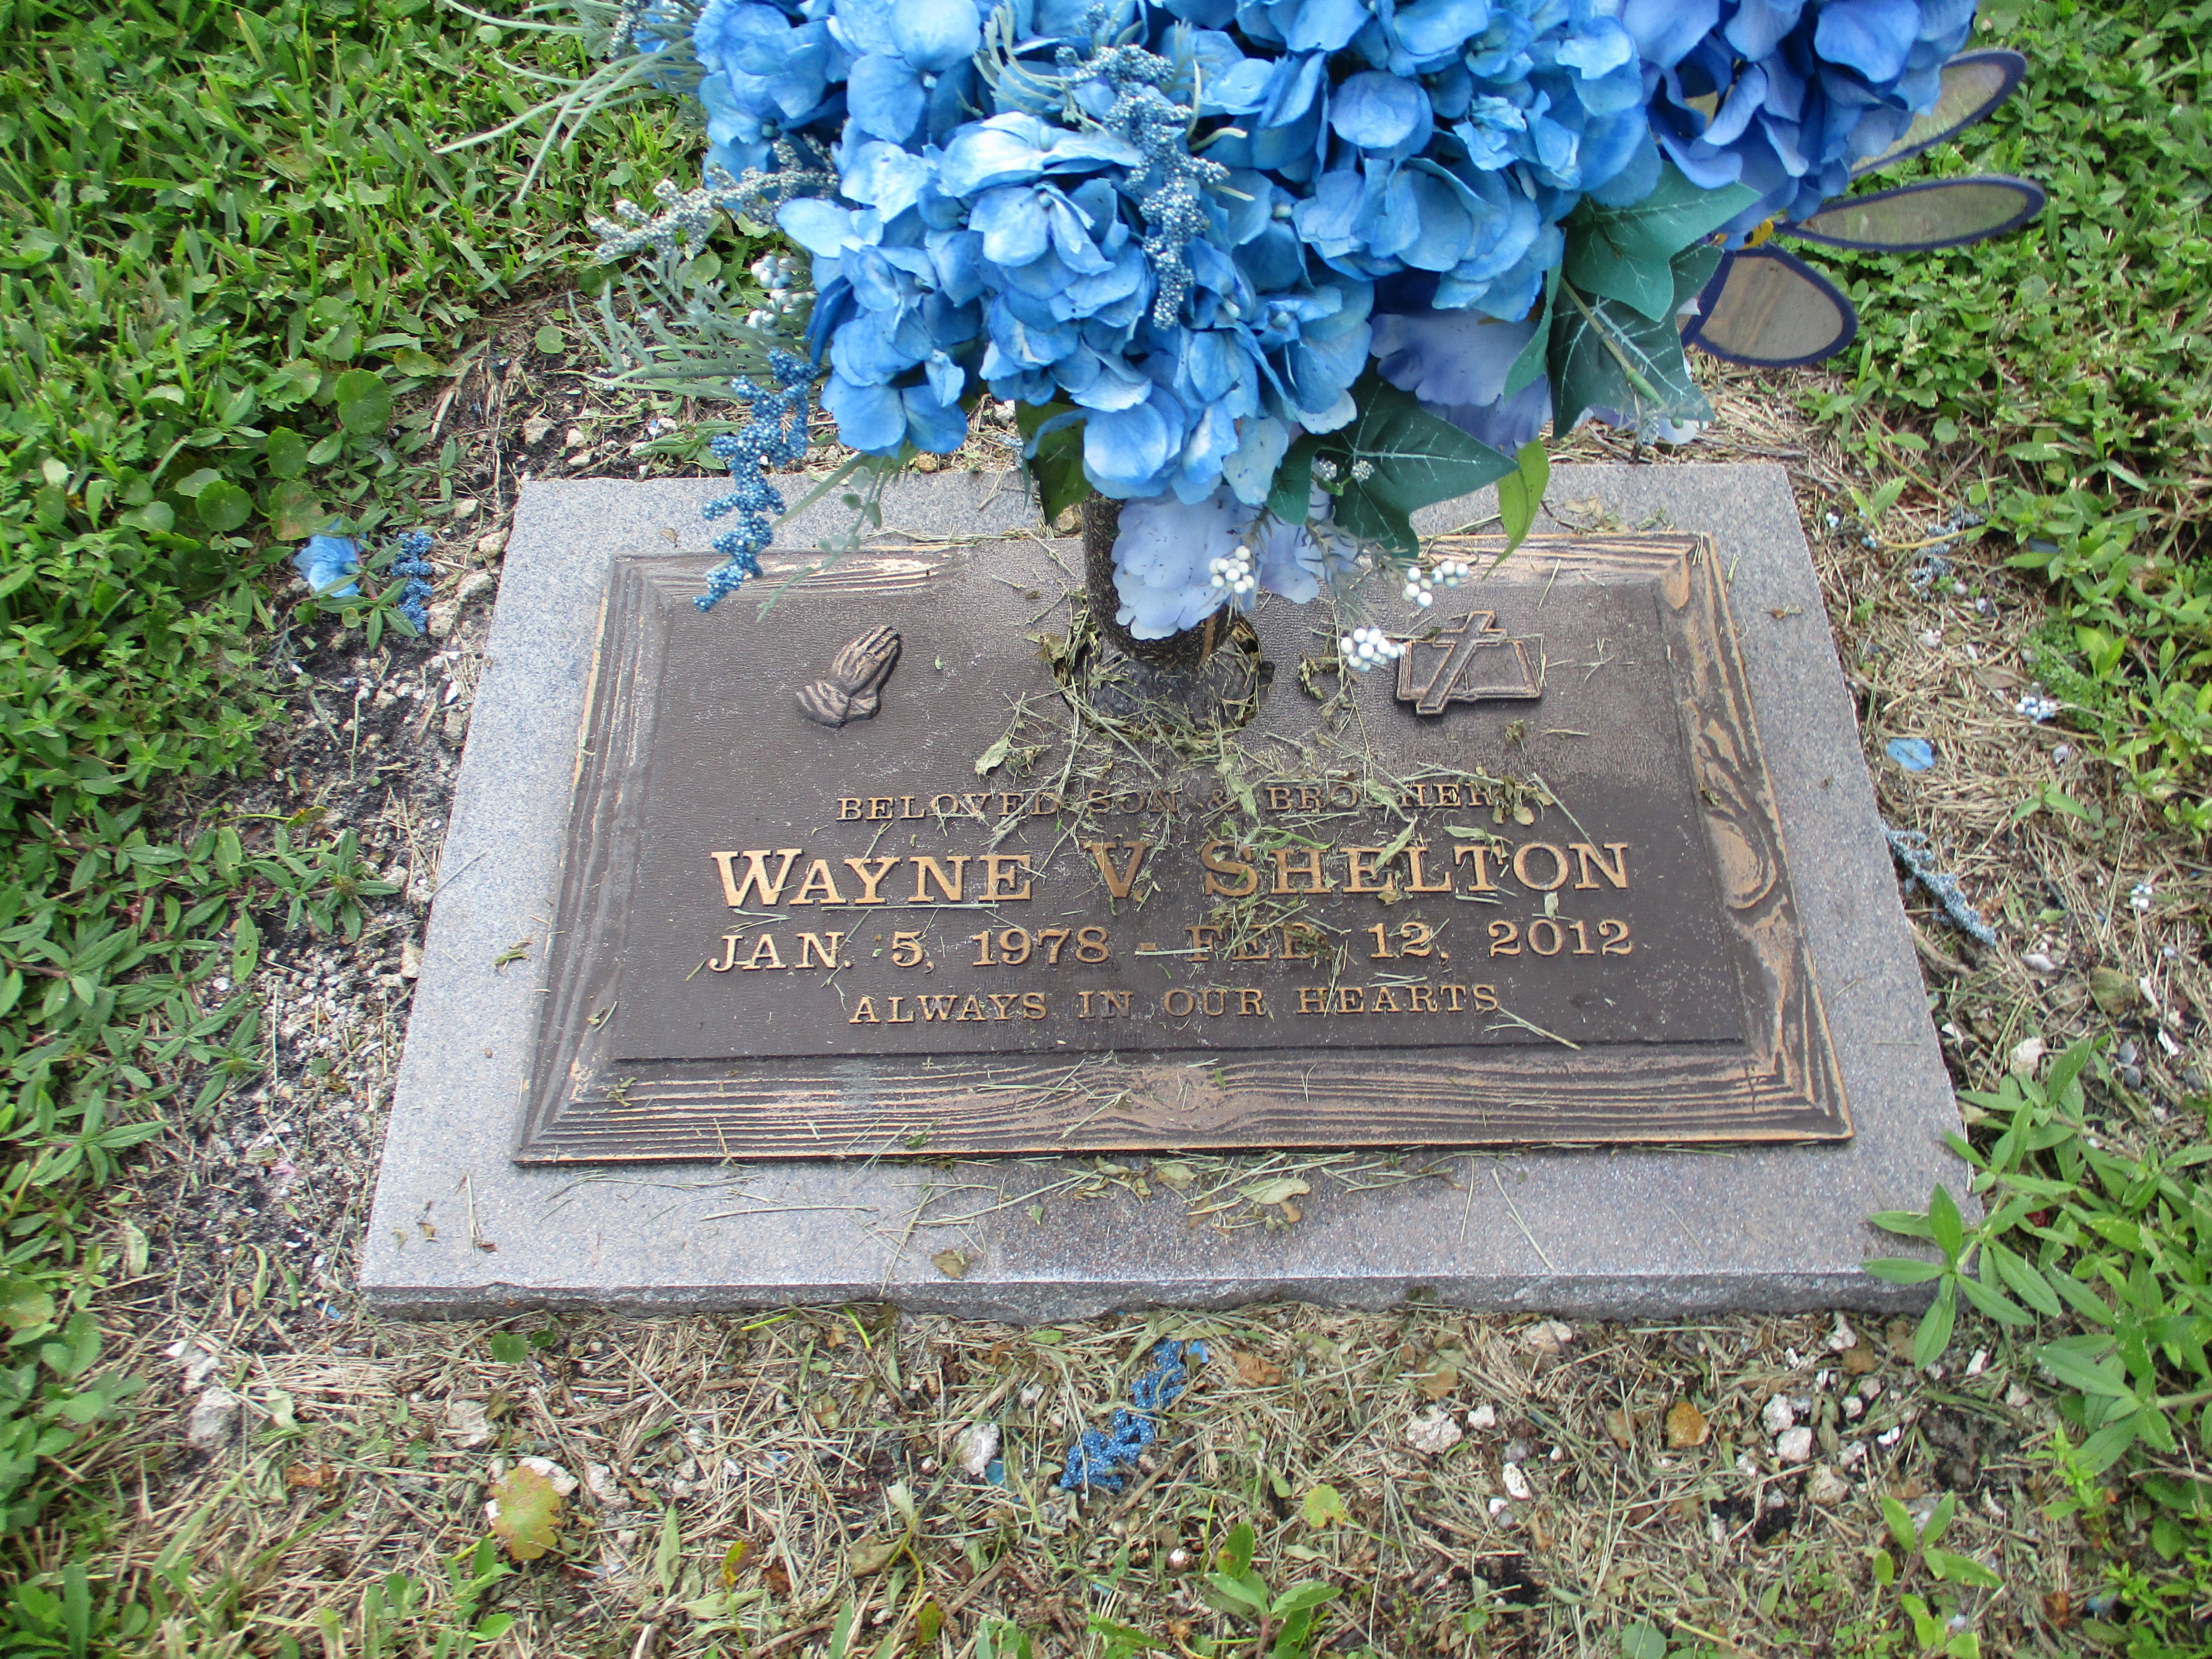 Wayne V Shelton